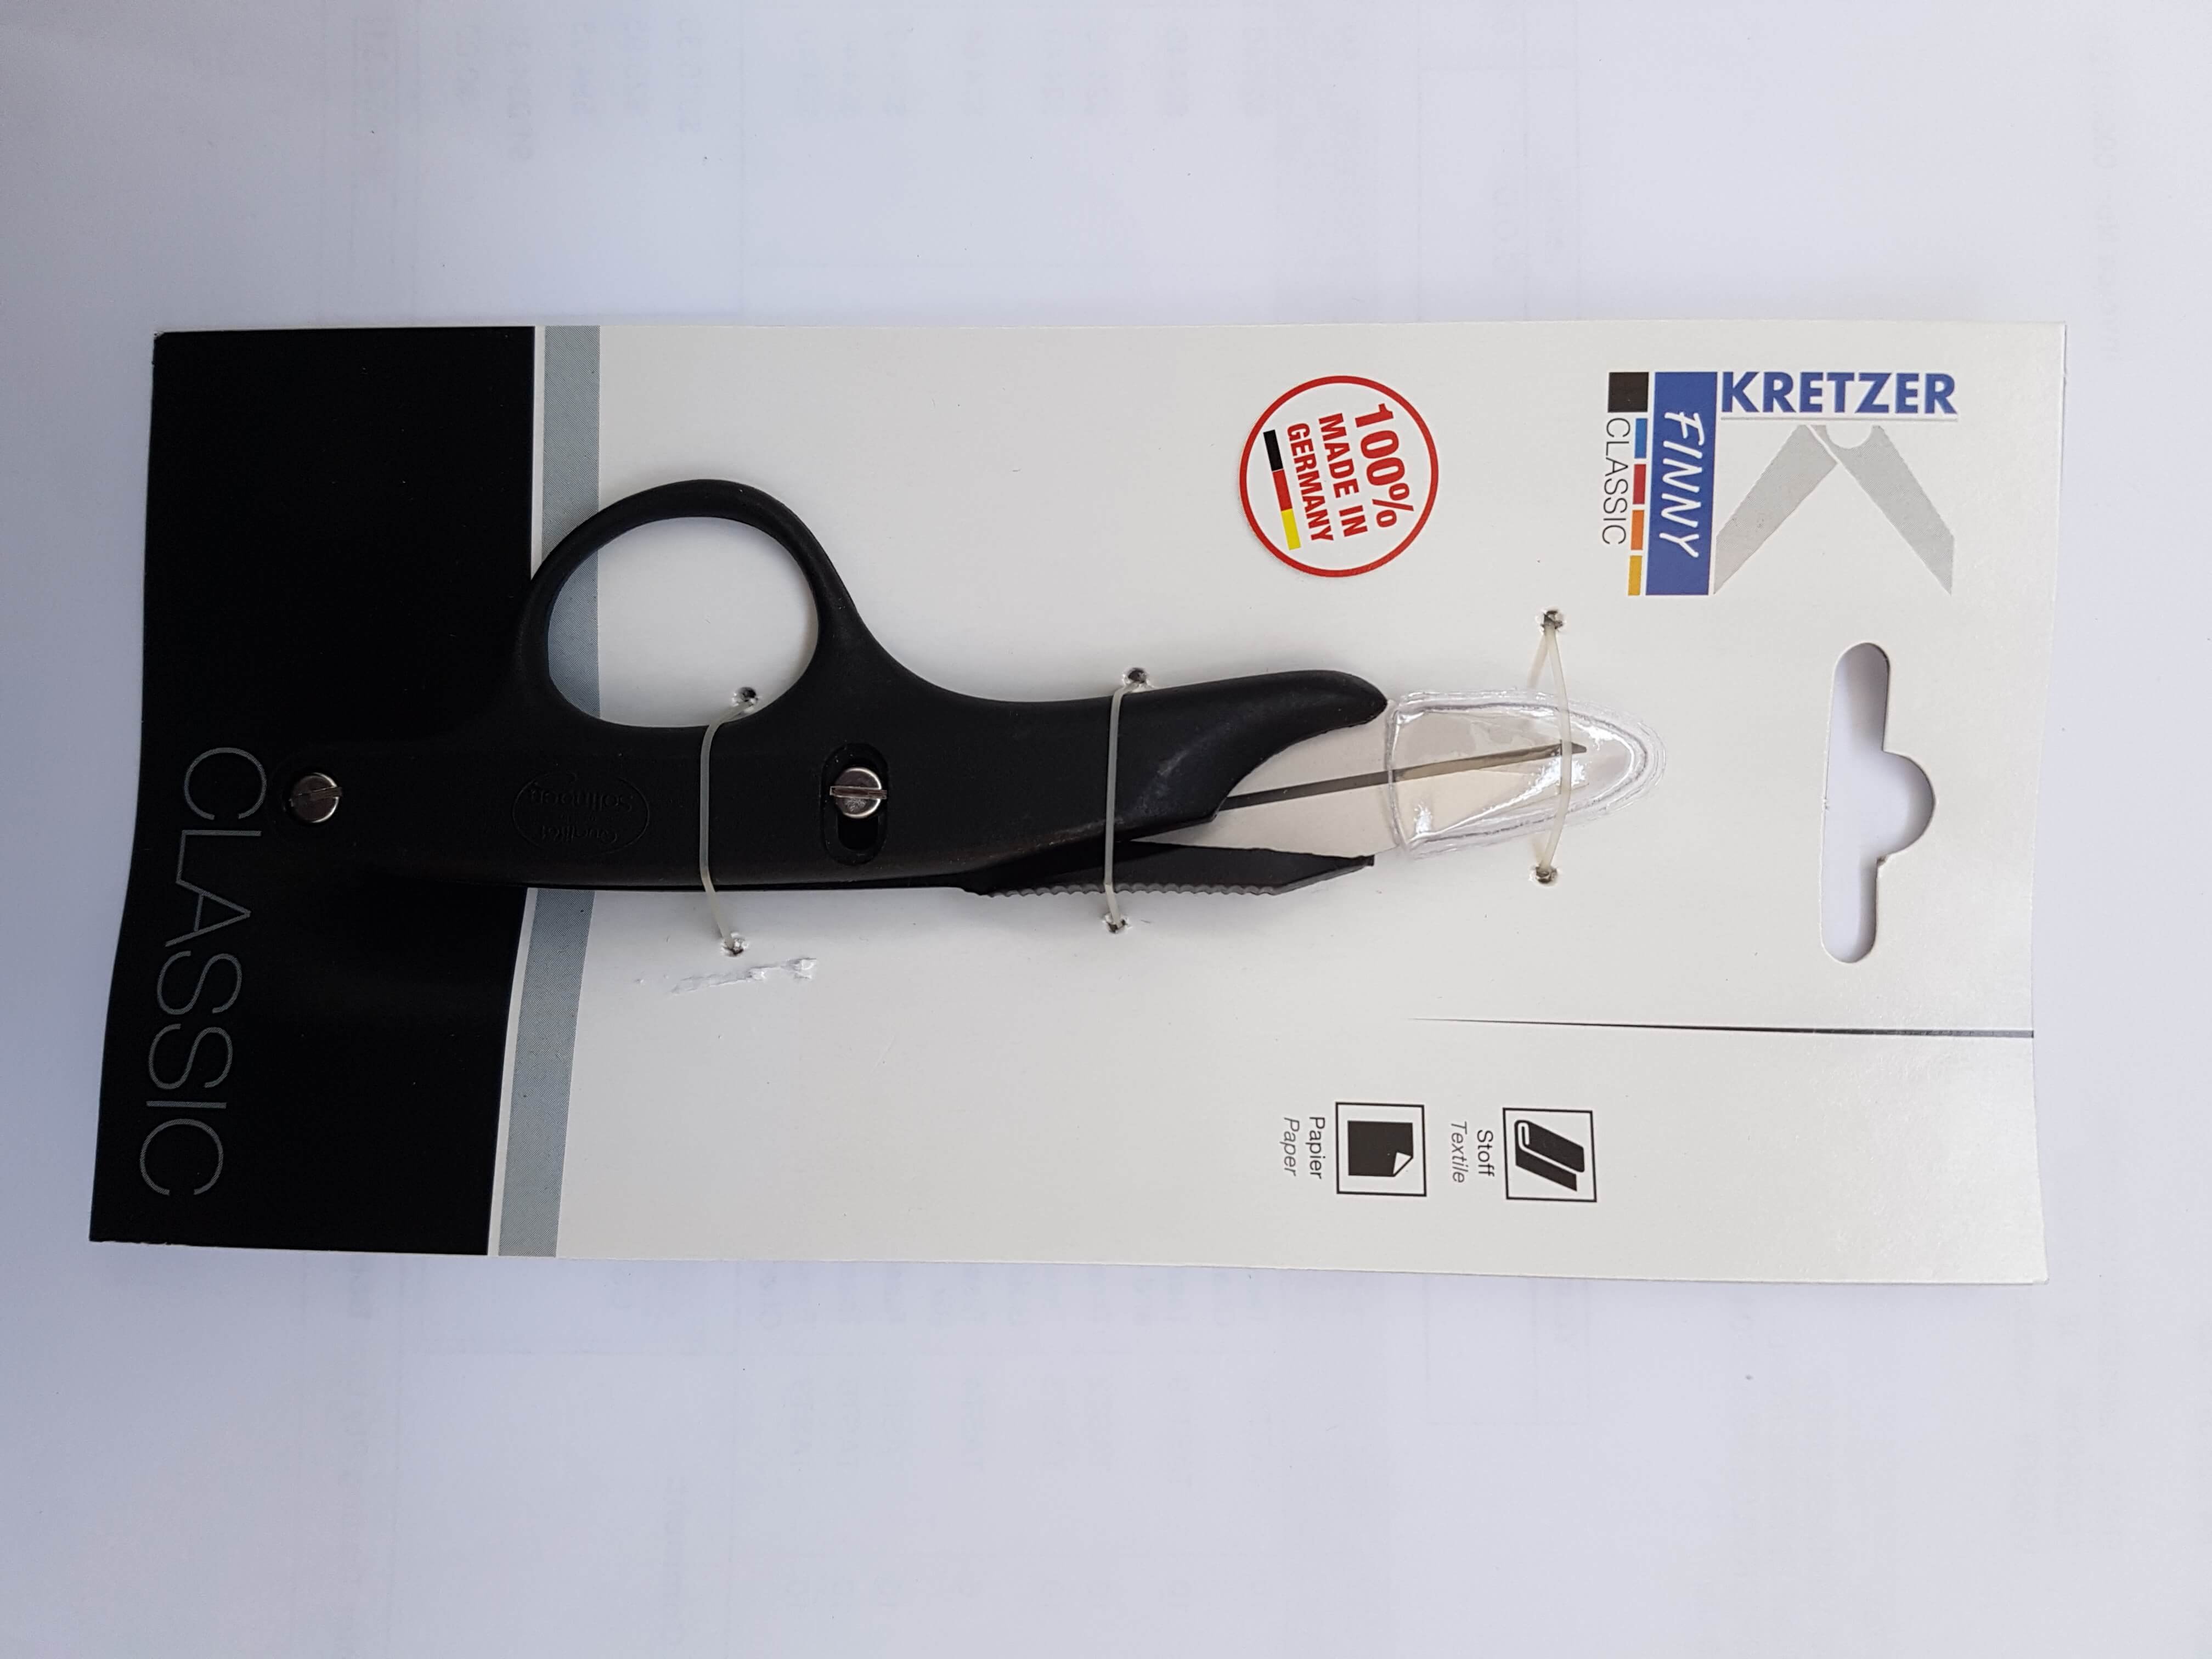 760811 Kretzer German-made thread-nipper scissors 5"